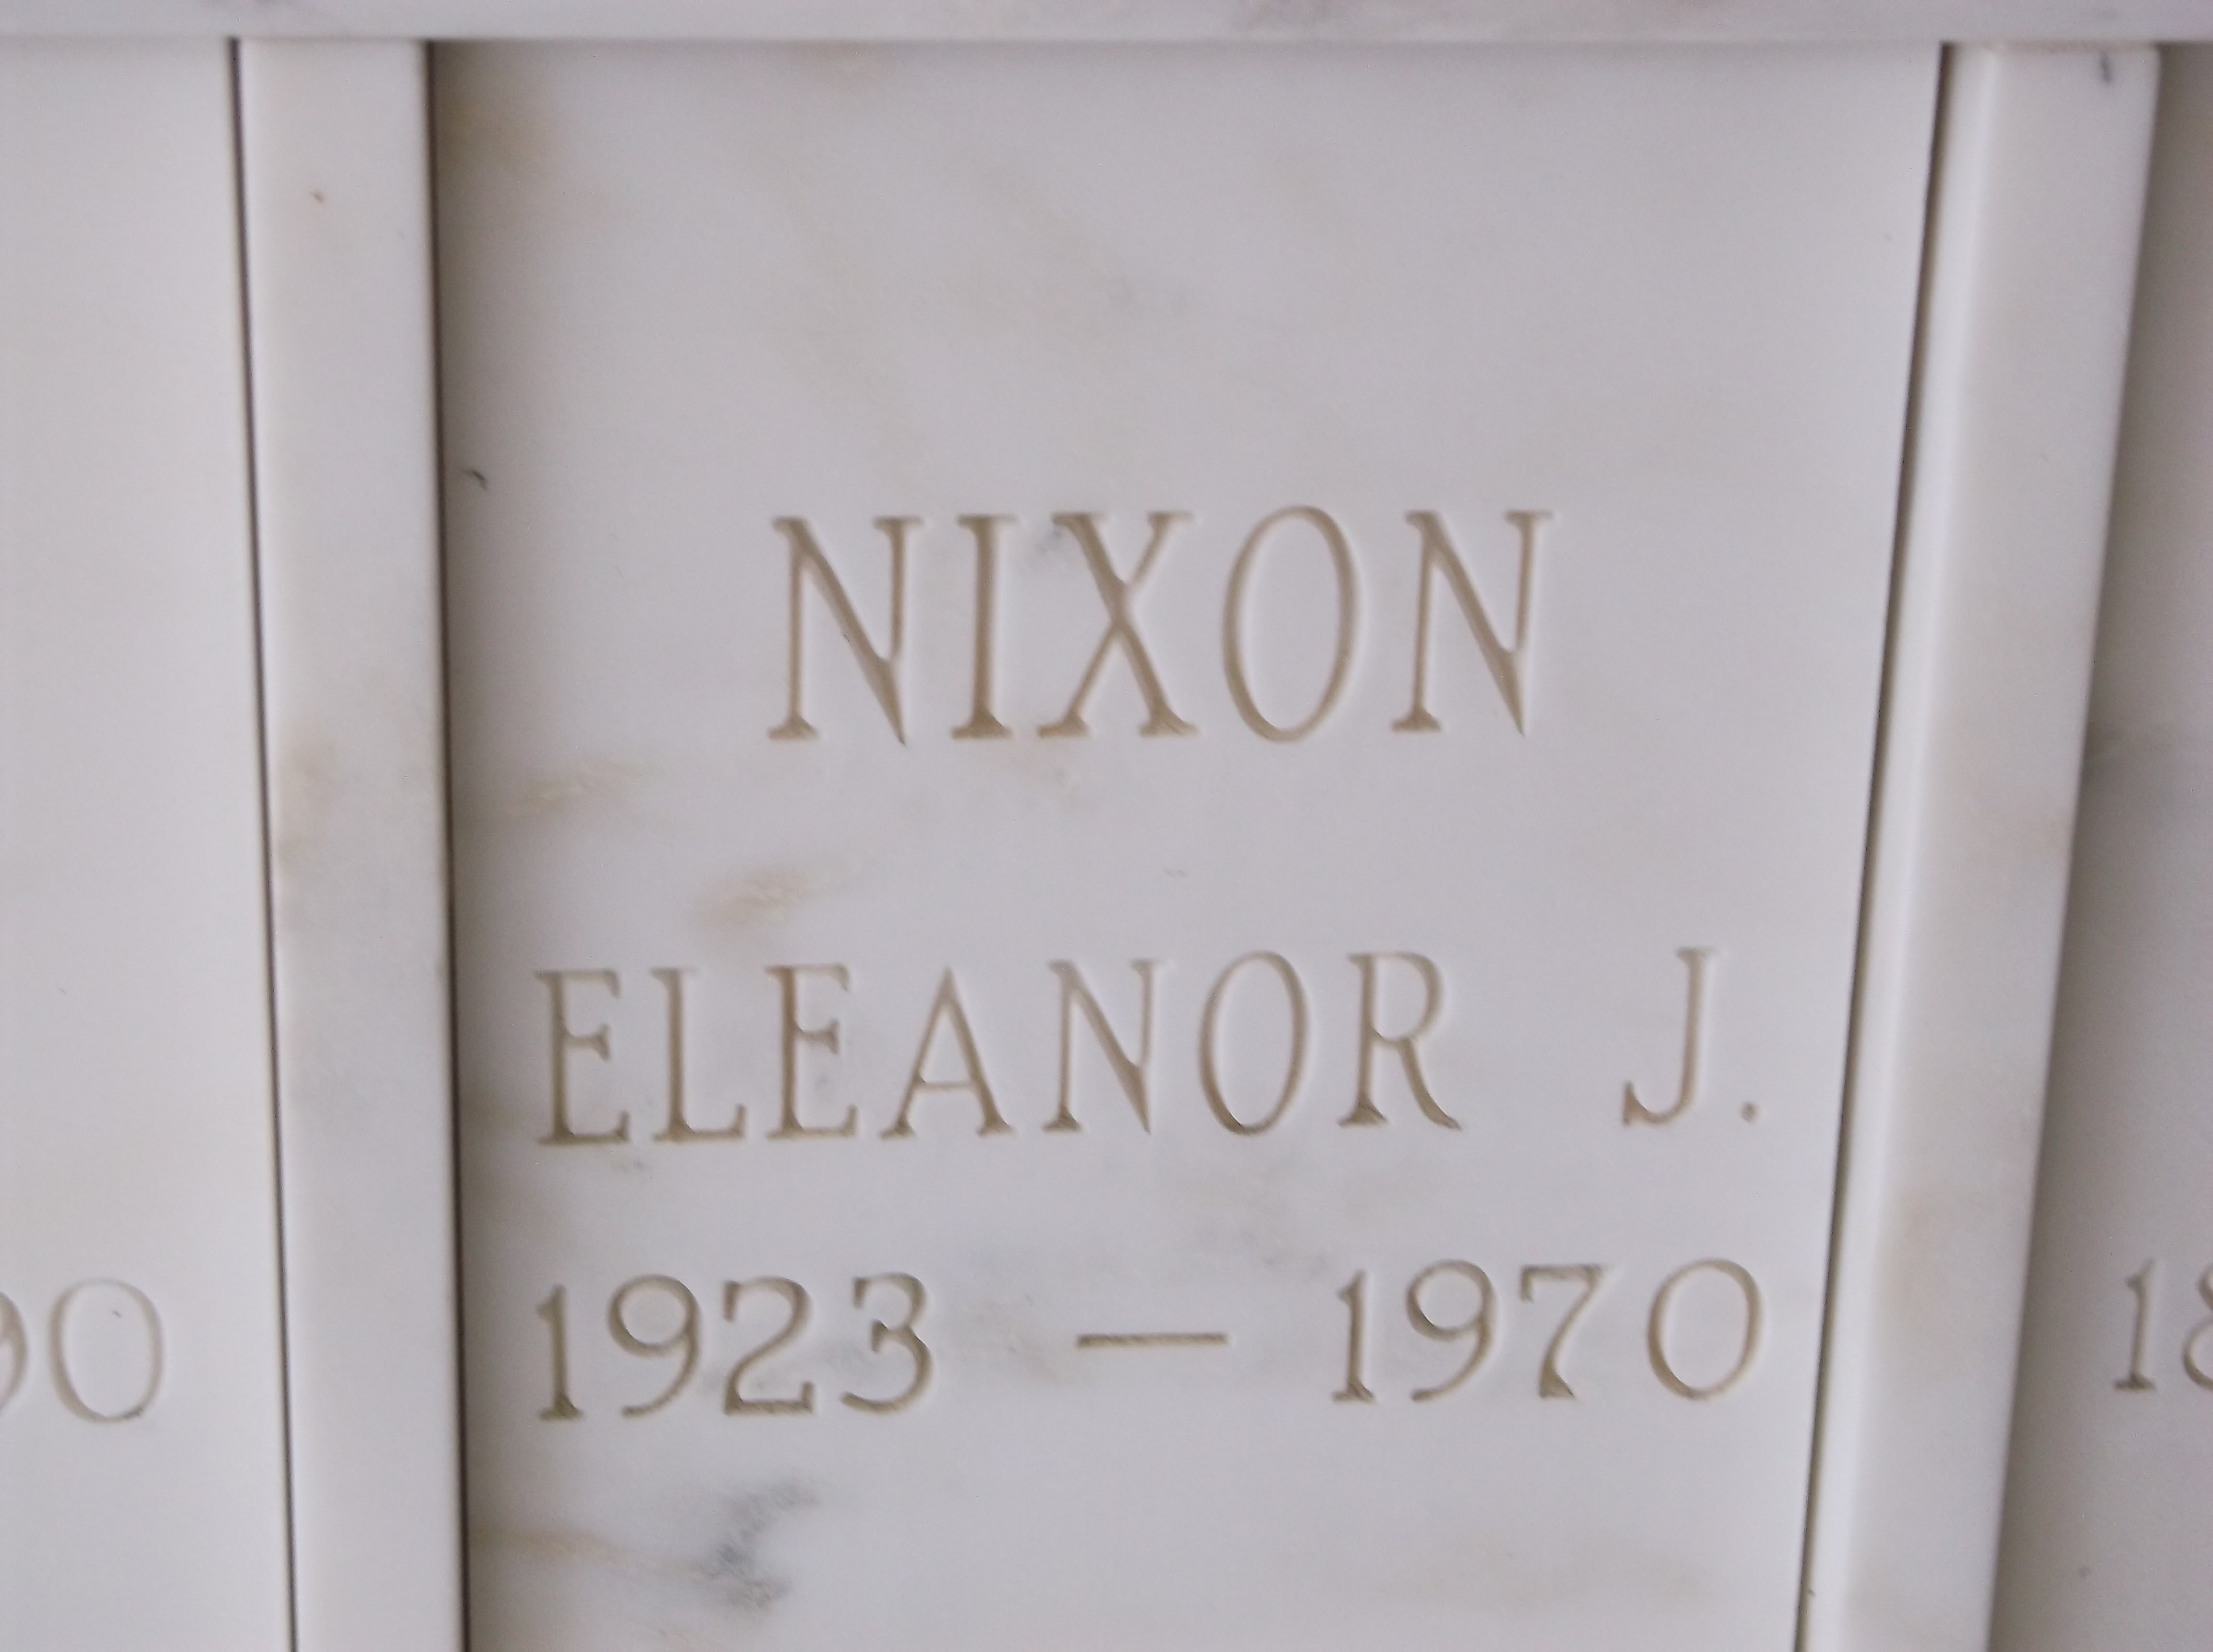 Eleanor J Nixon